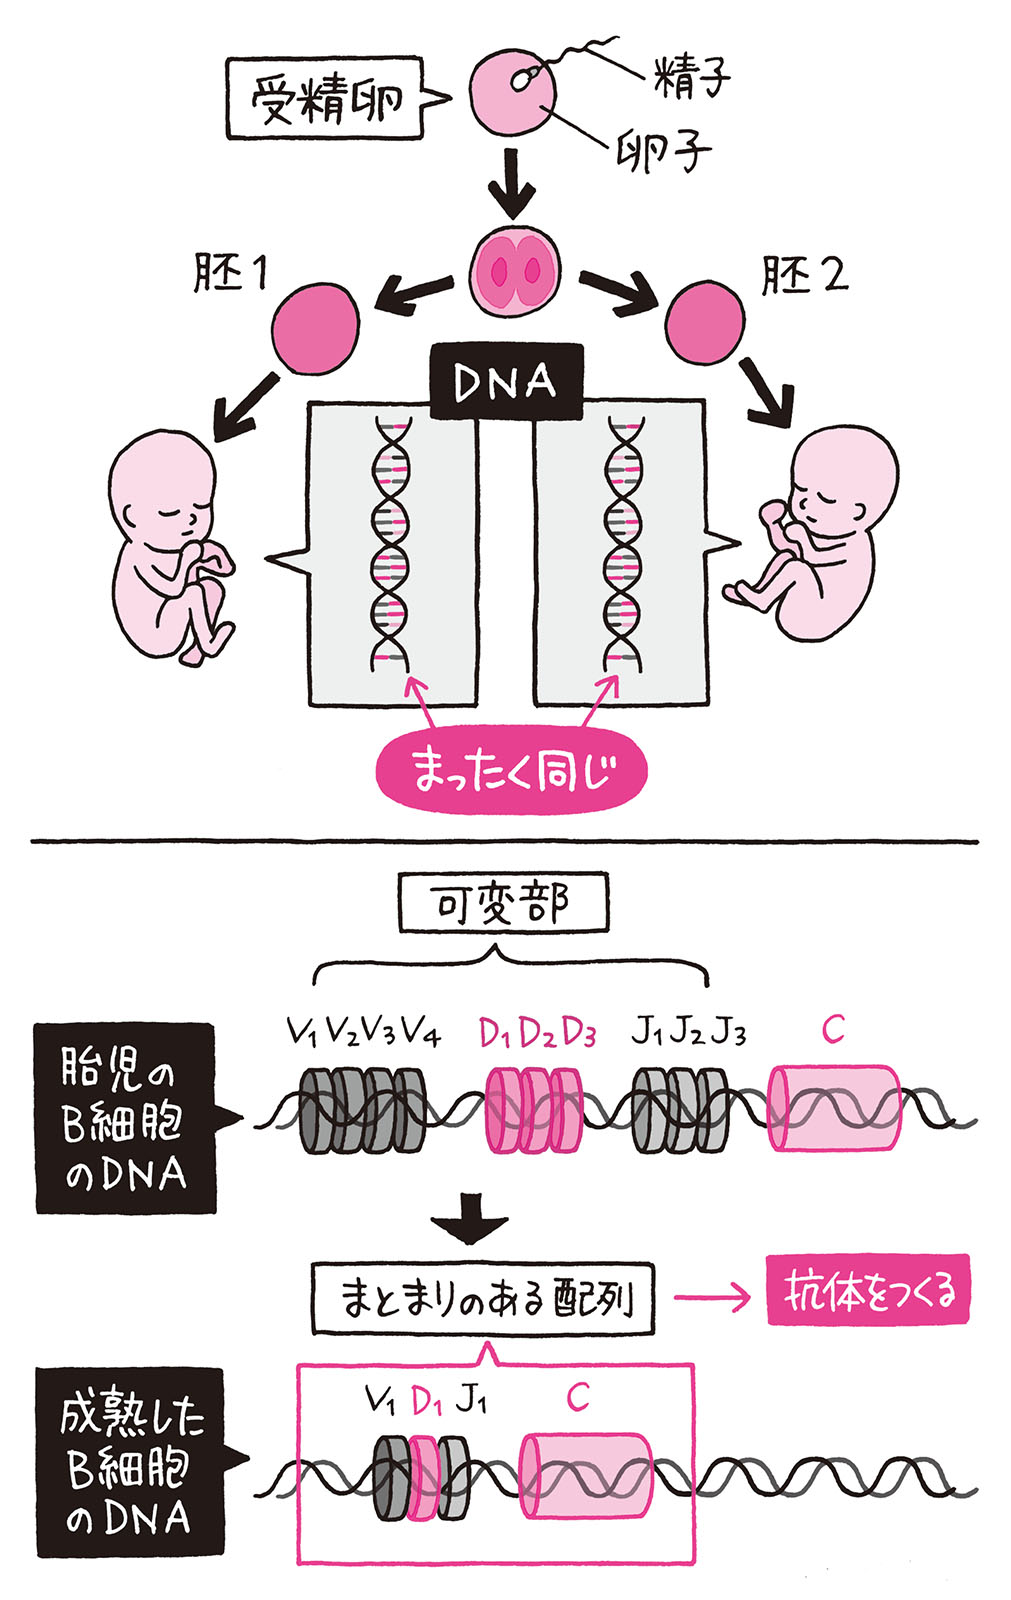 1個の受精卵から生まれた一卵性双生児は Dnaは同じはずなのに指紋は異なる 身近な科学 毎日が発見ネット